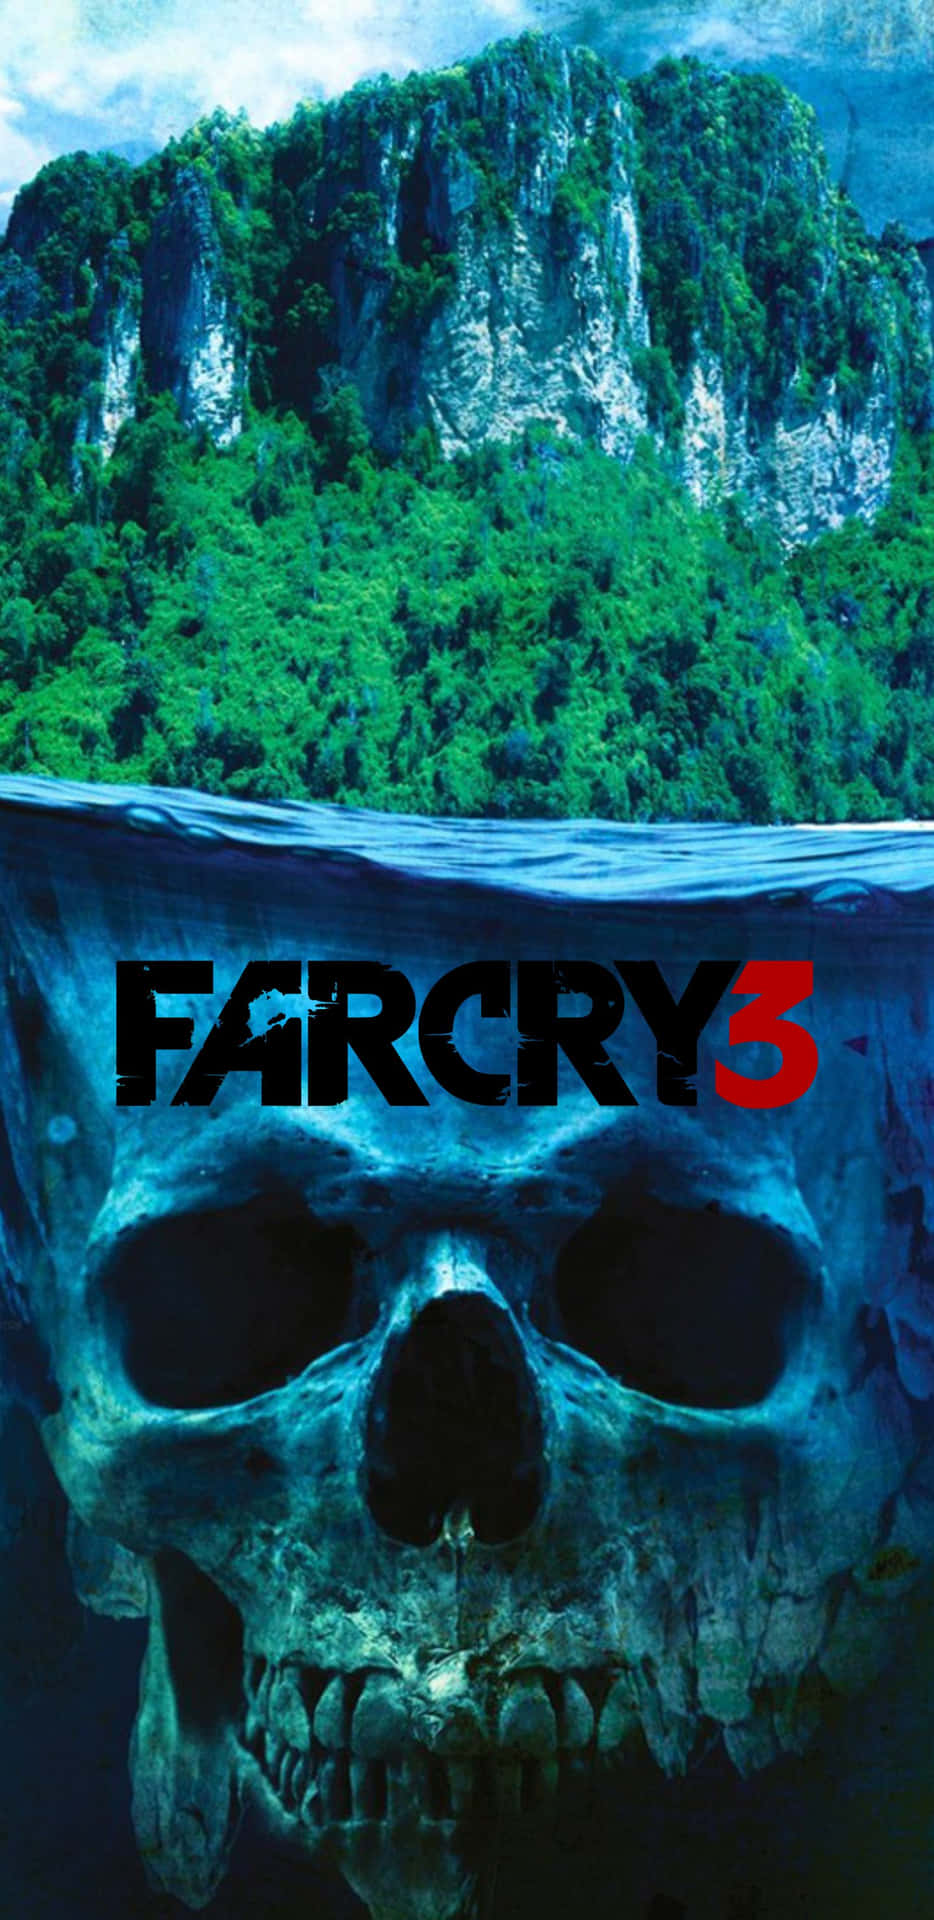 Utforskaen Orörd Paradis Med Pixel 3xl Och Far Cry 3 Som Din Bakgrundsbild.